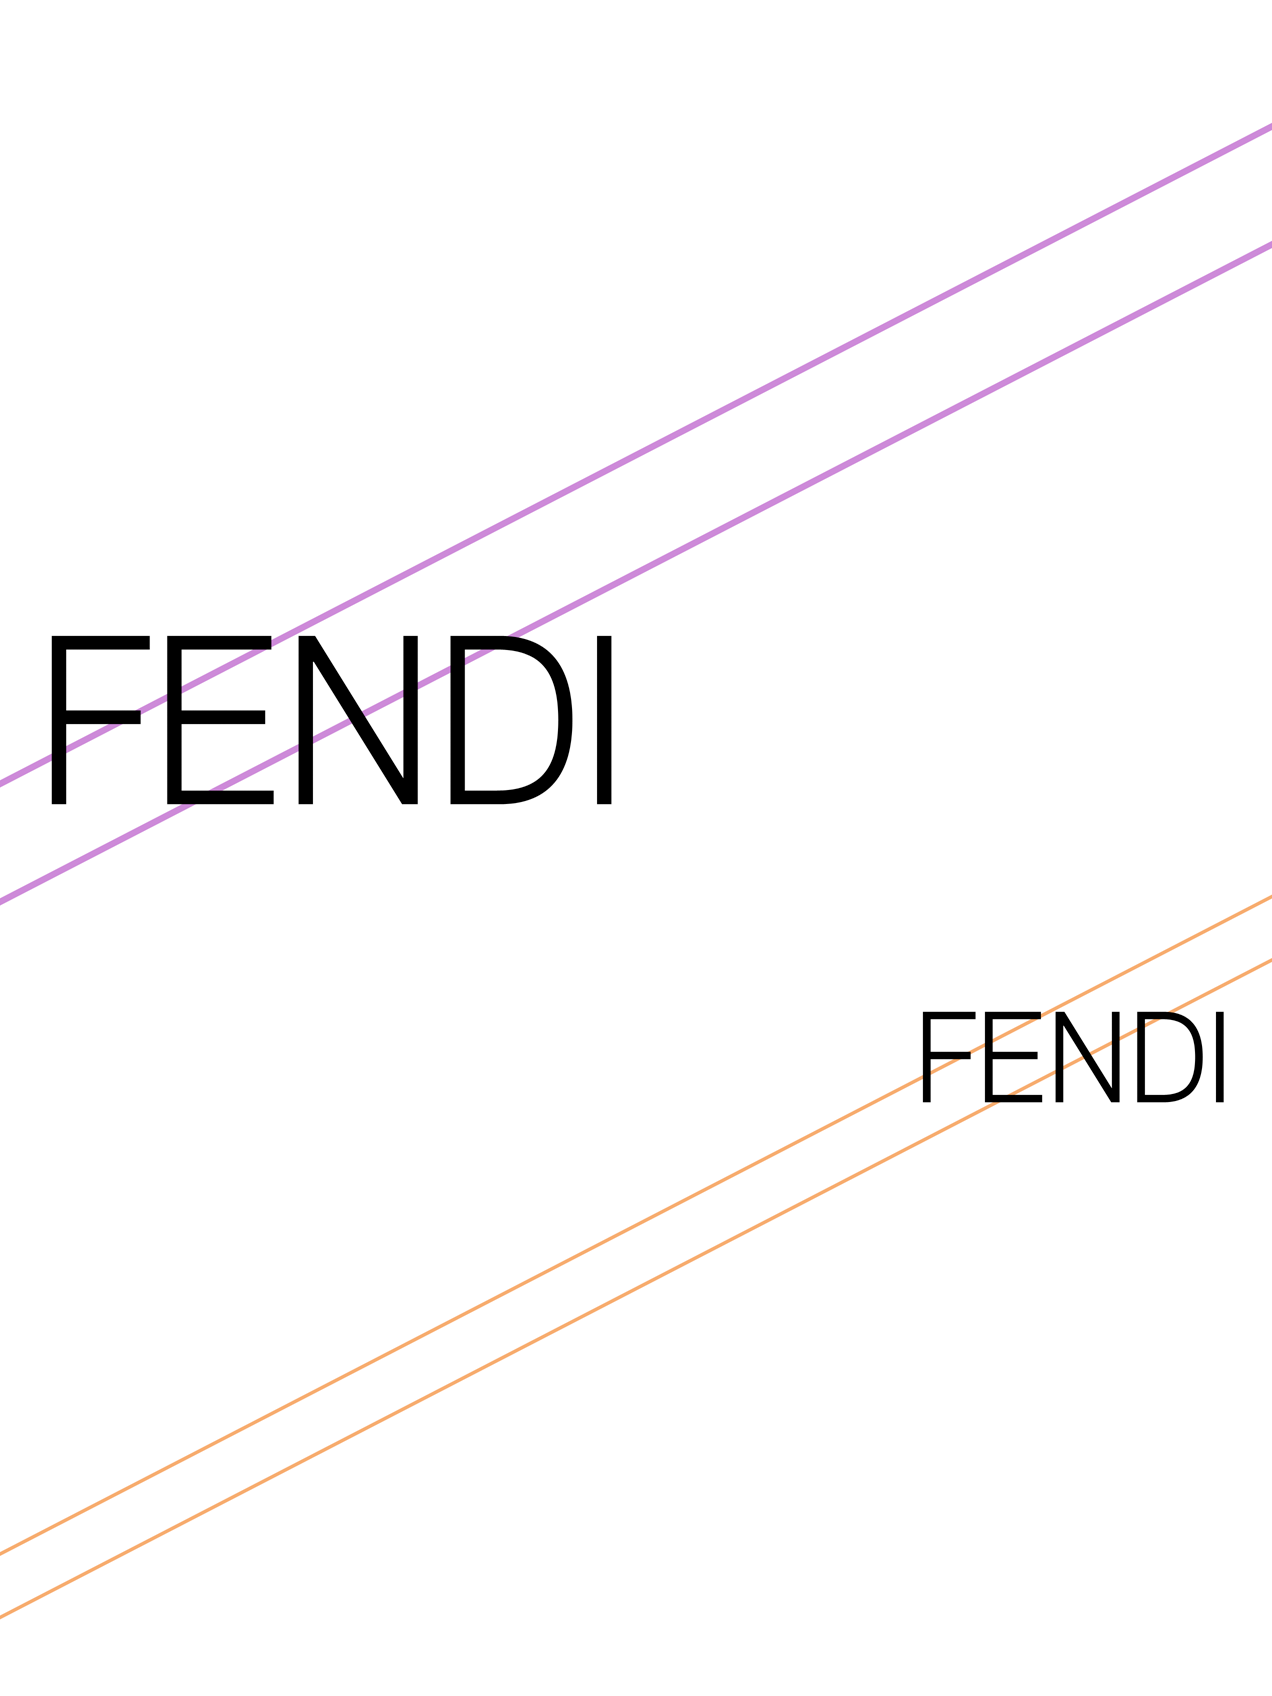 Fendi Design Competition